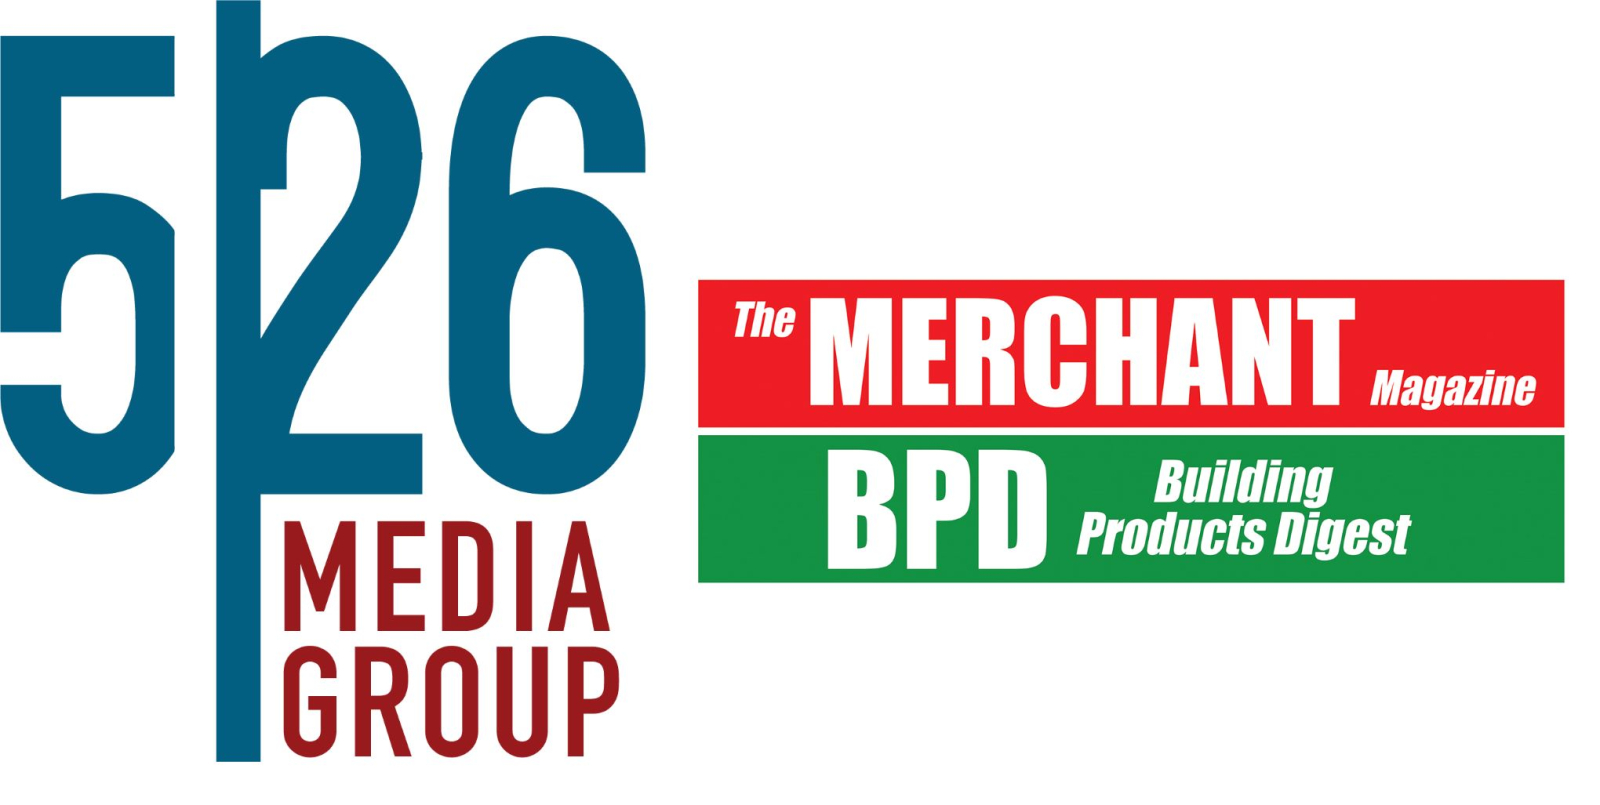 526 Media Group updated logo_smaller.jpg